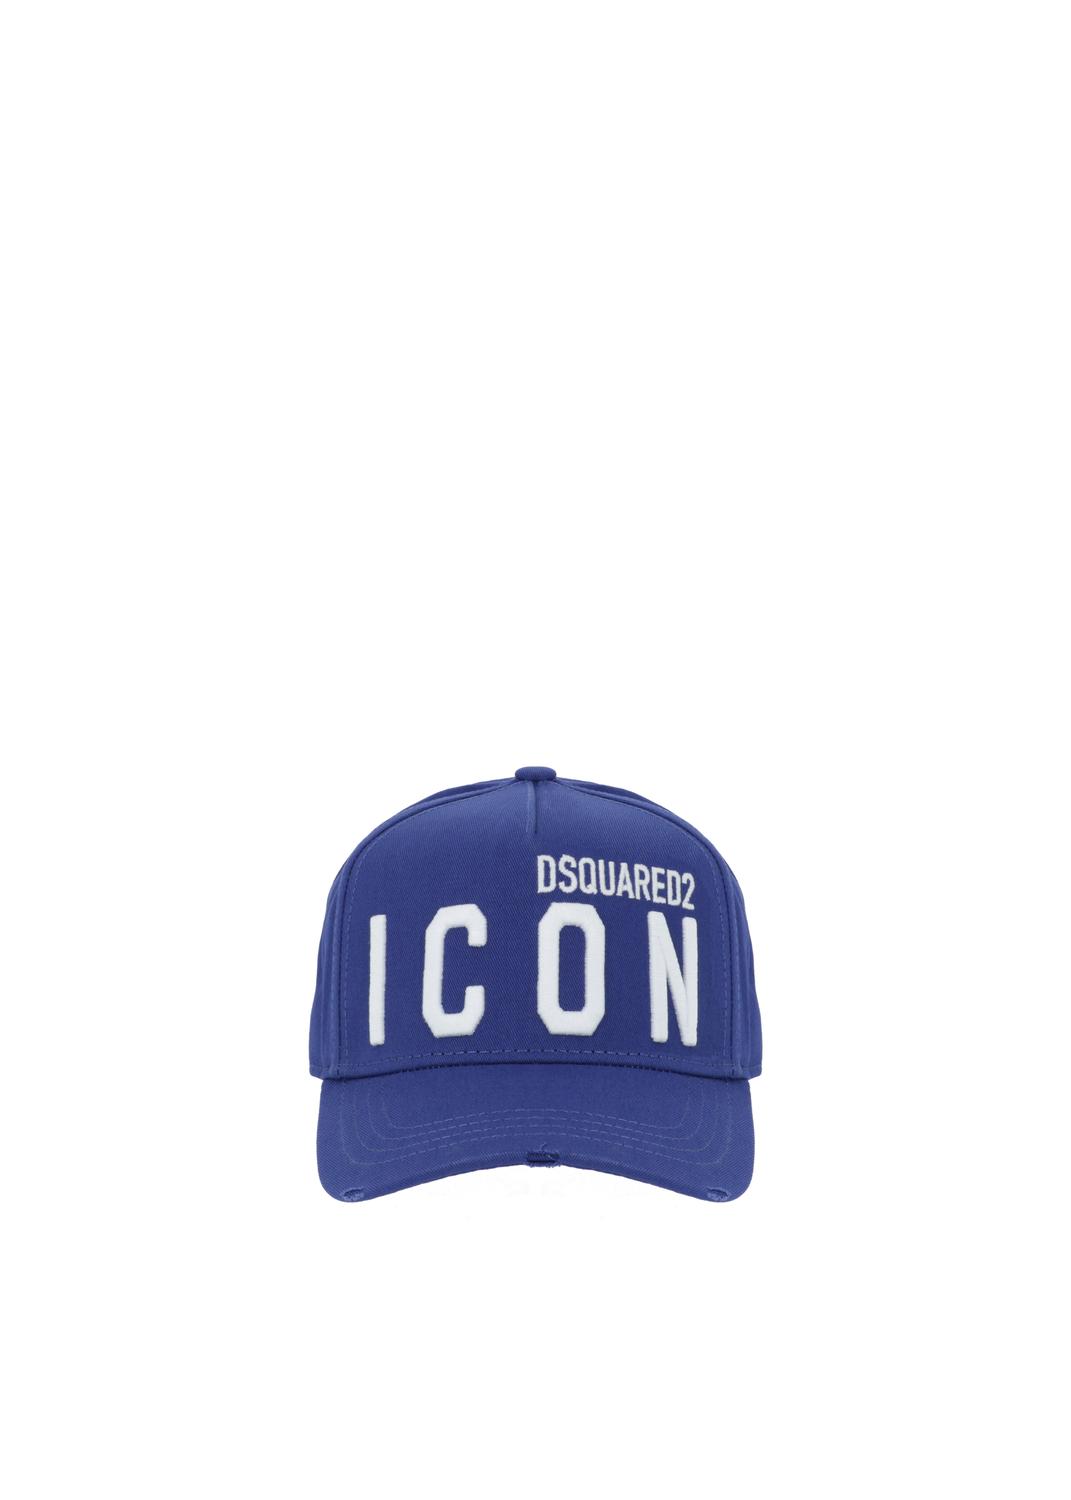 Dsquared2 gorra de béisbol con logo DSQ-BCM0412